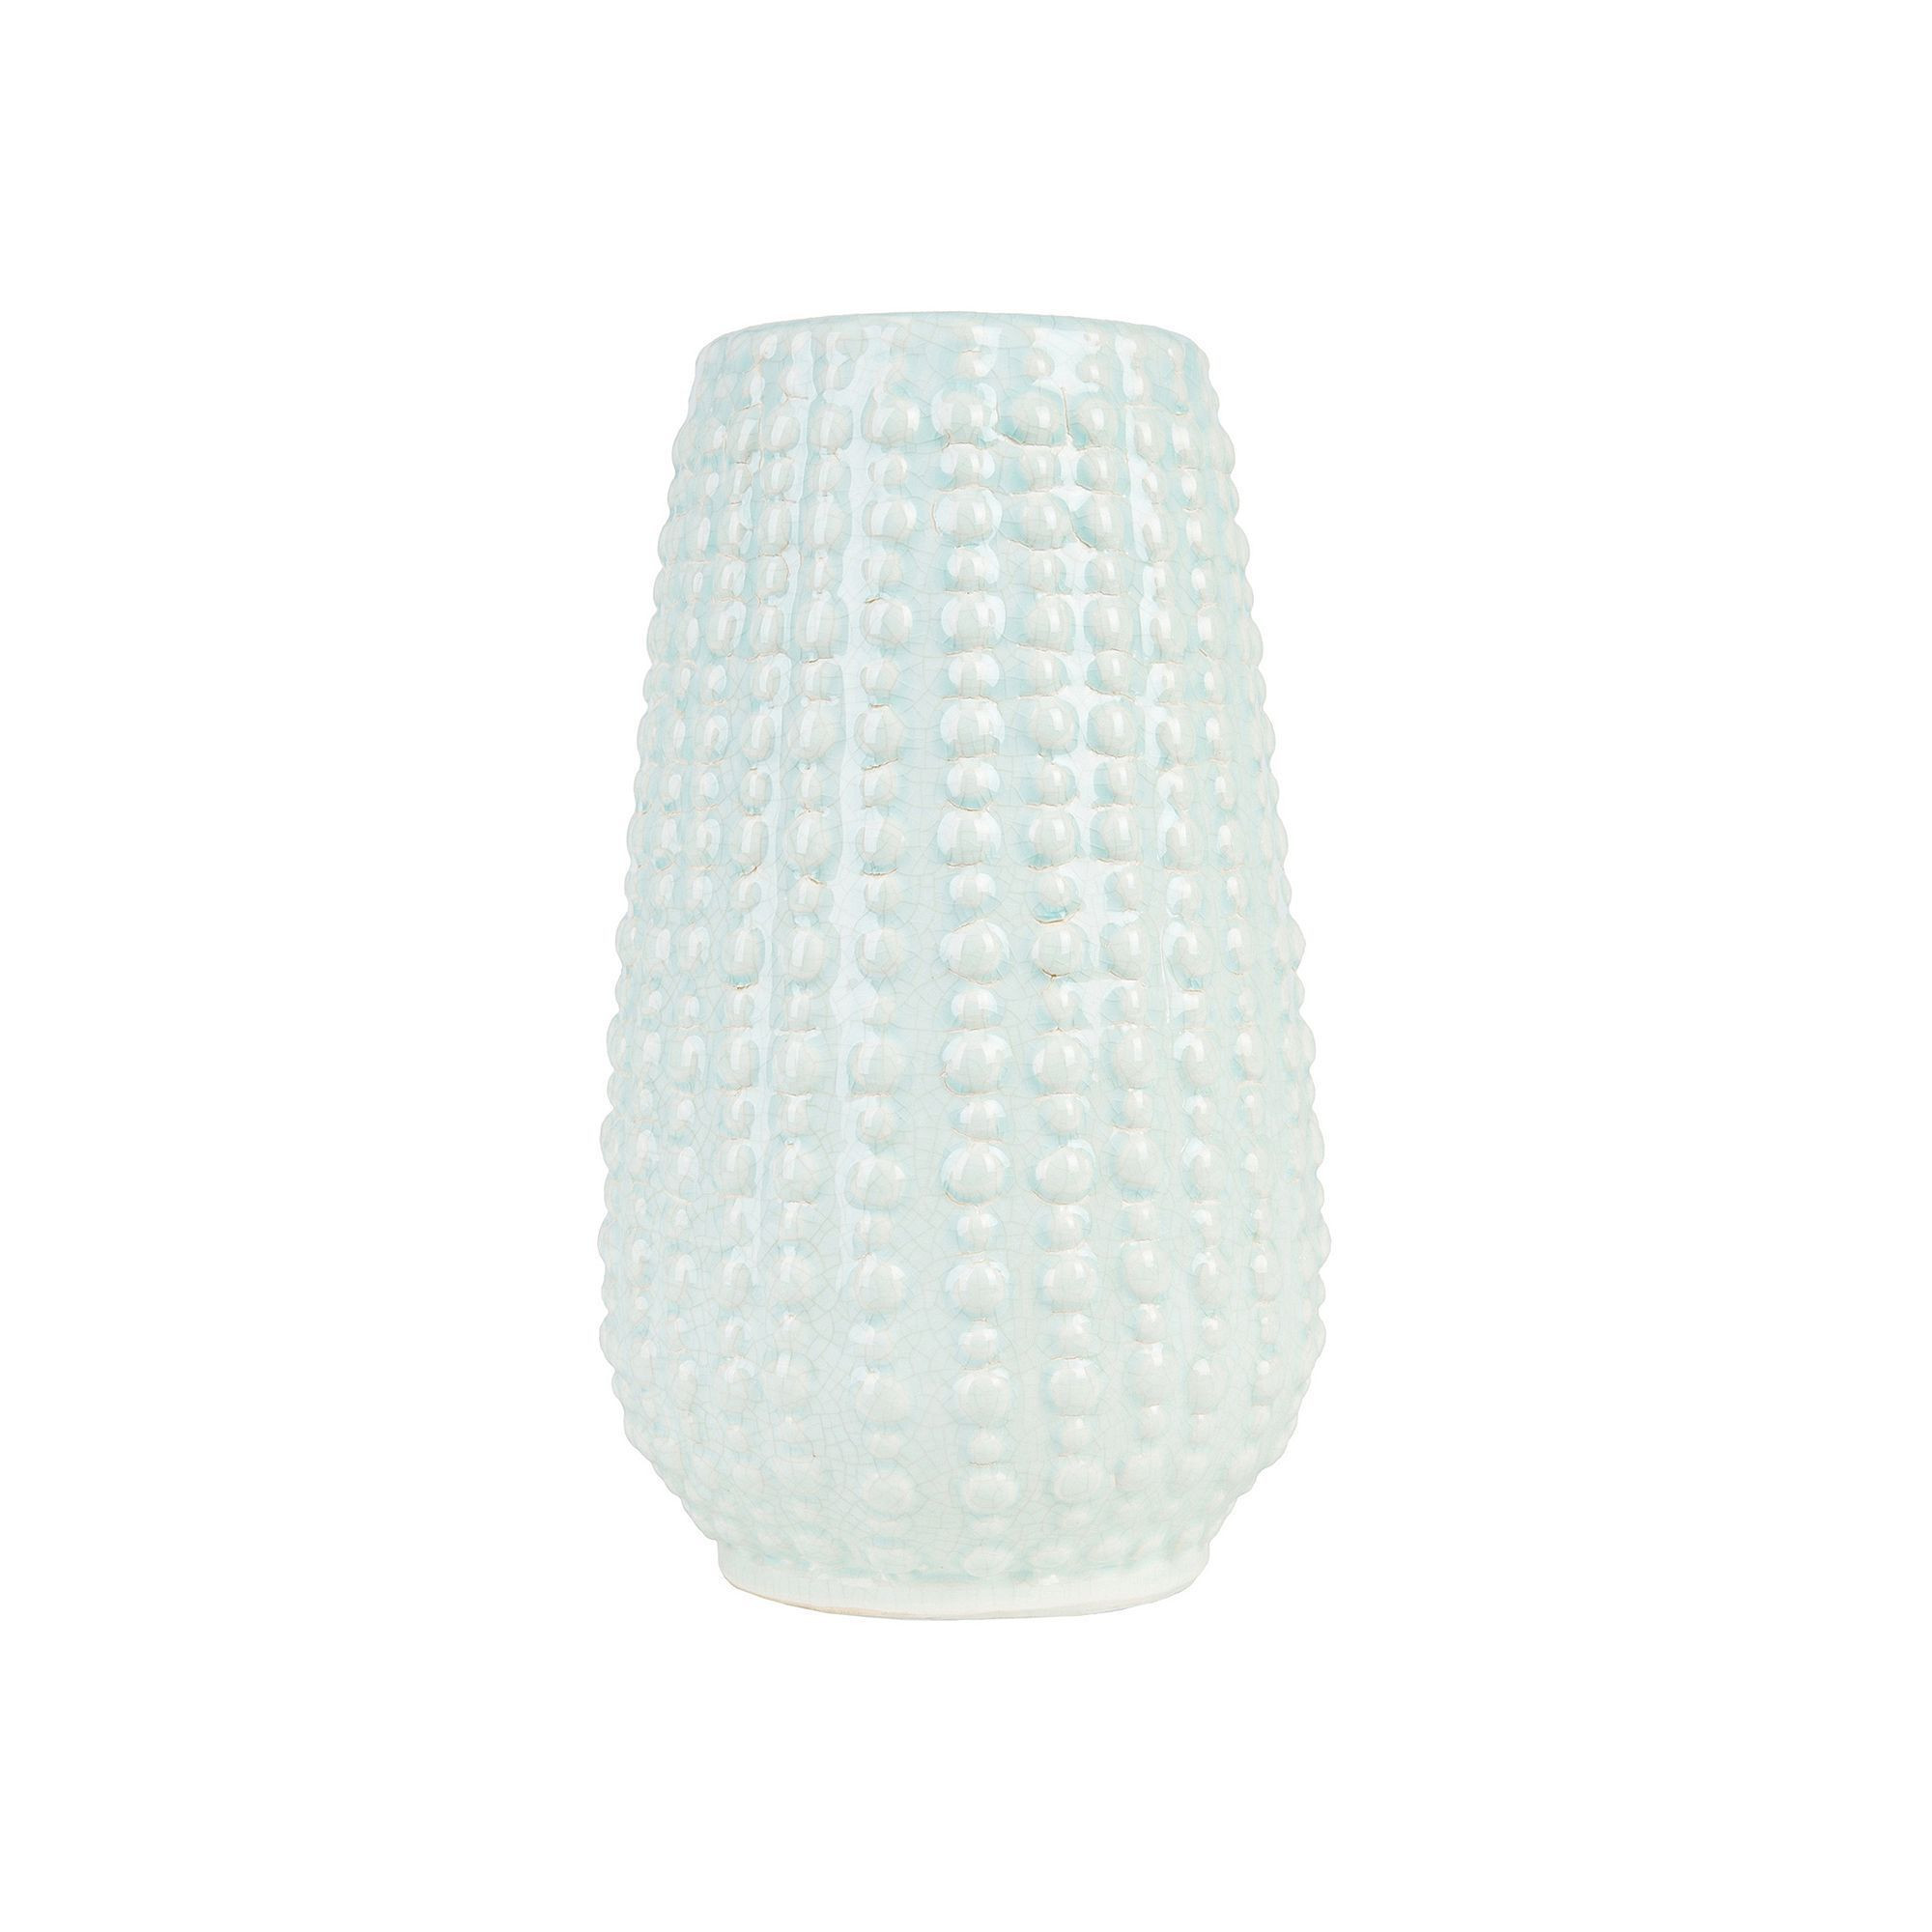 17 Stylish Light Blue and White Vase 2024 free download light blue and white vase of decor 140 jimos 9 x 5 textured ceramic vase pinterest ceramic within decor 140 jimos 9 x 5 textured ceramic vase light blue durable